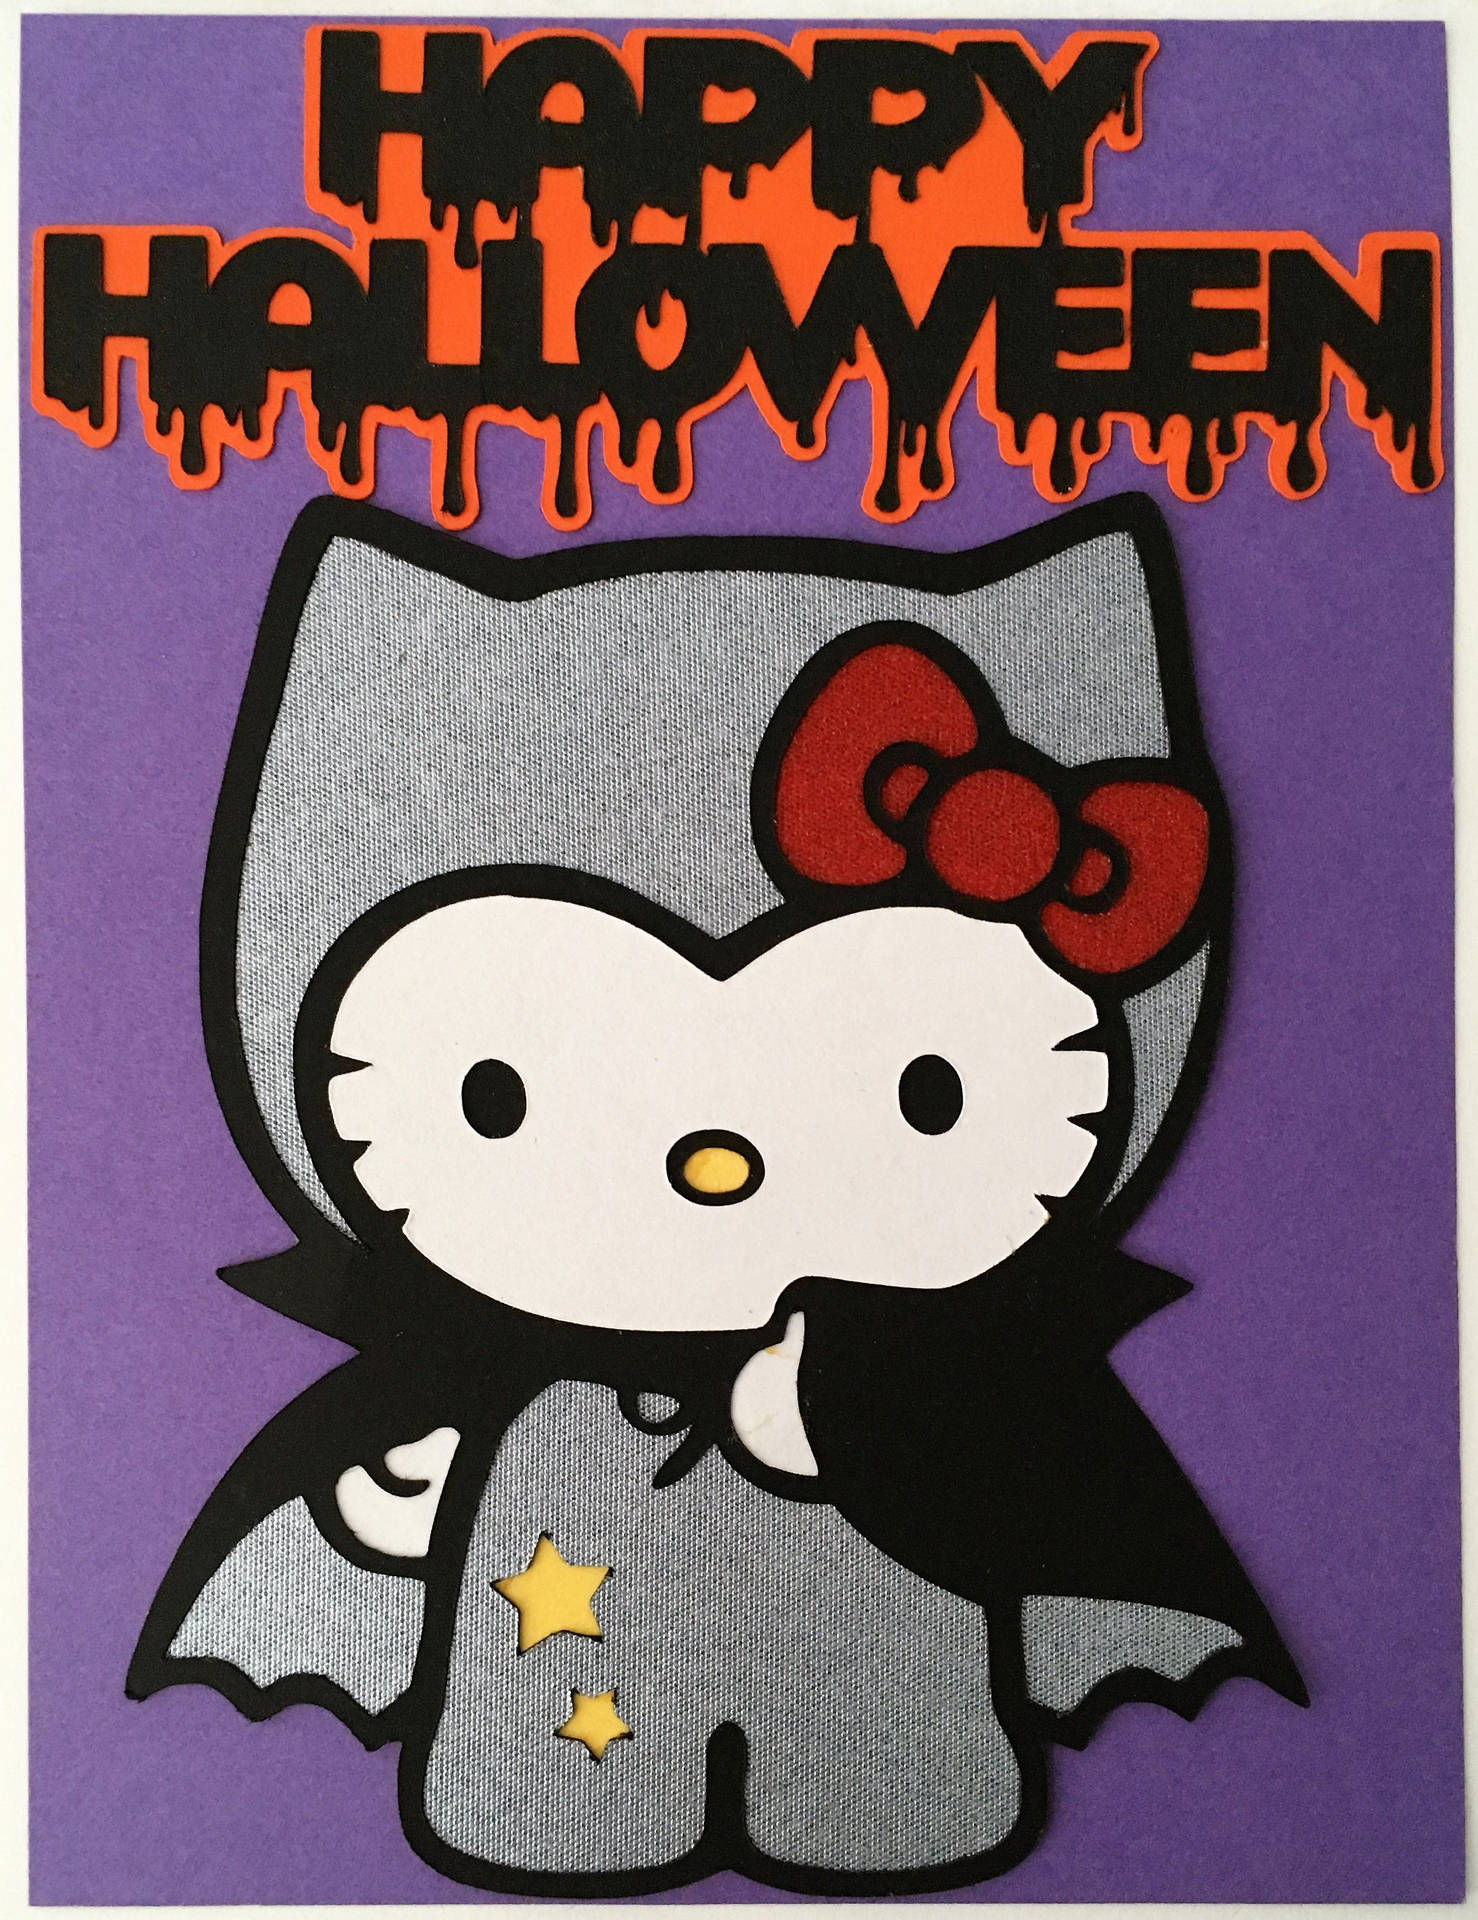 Hello Kitty Halloween Background Wallpaper